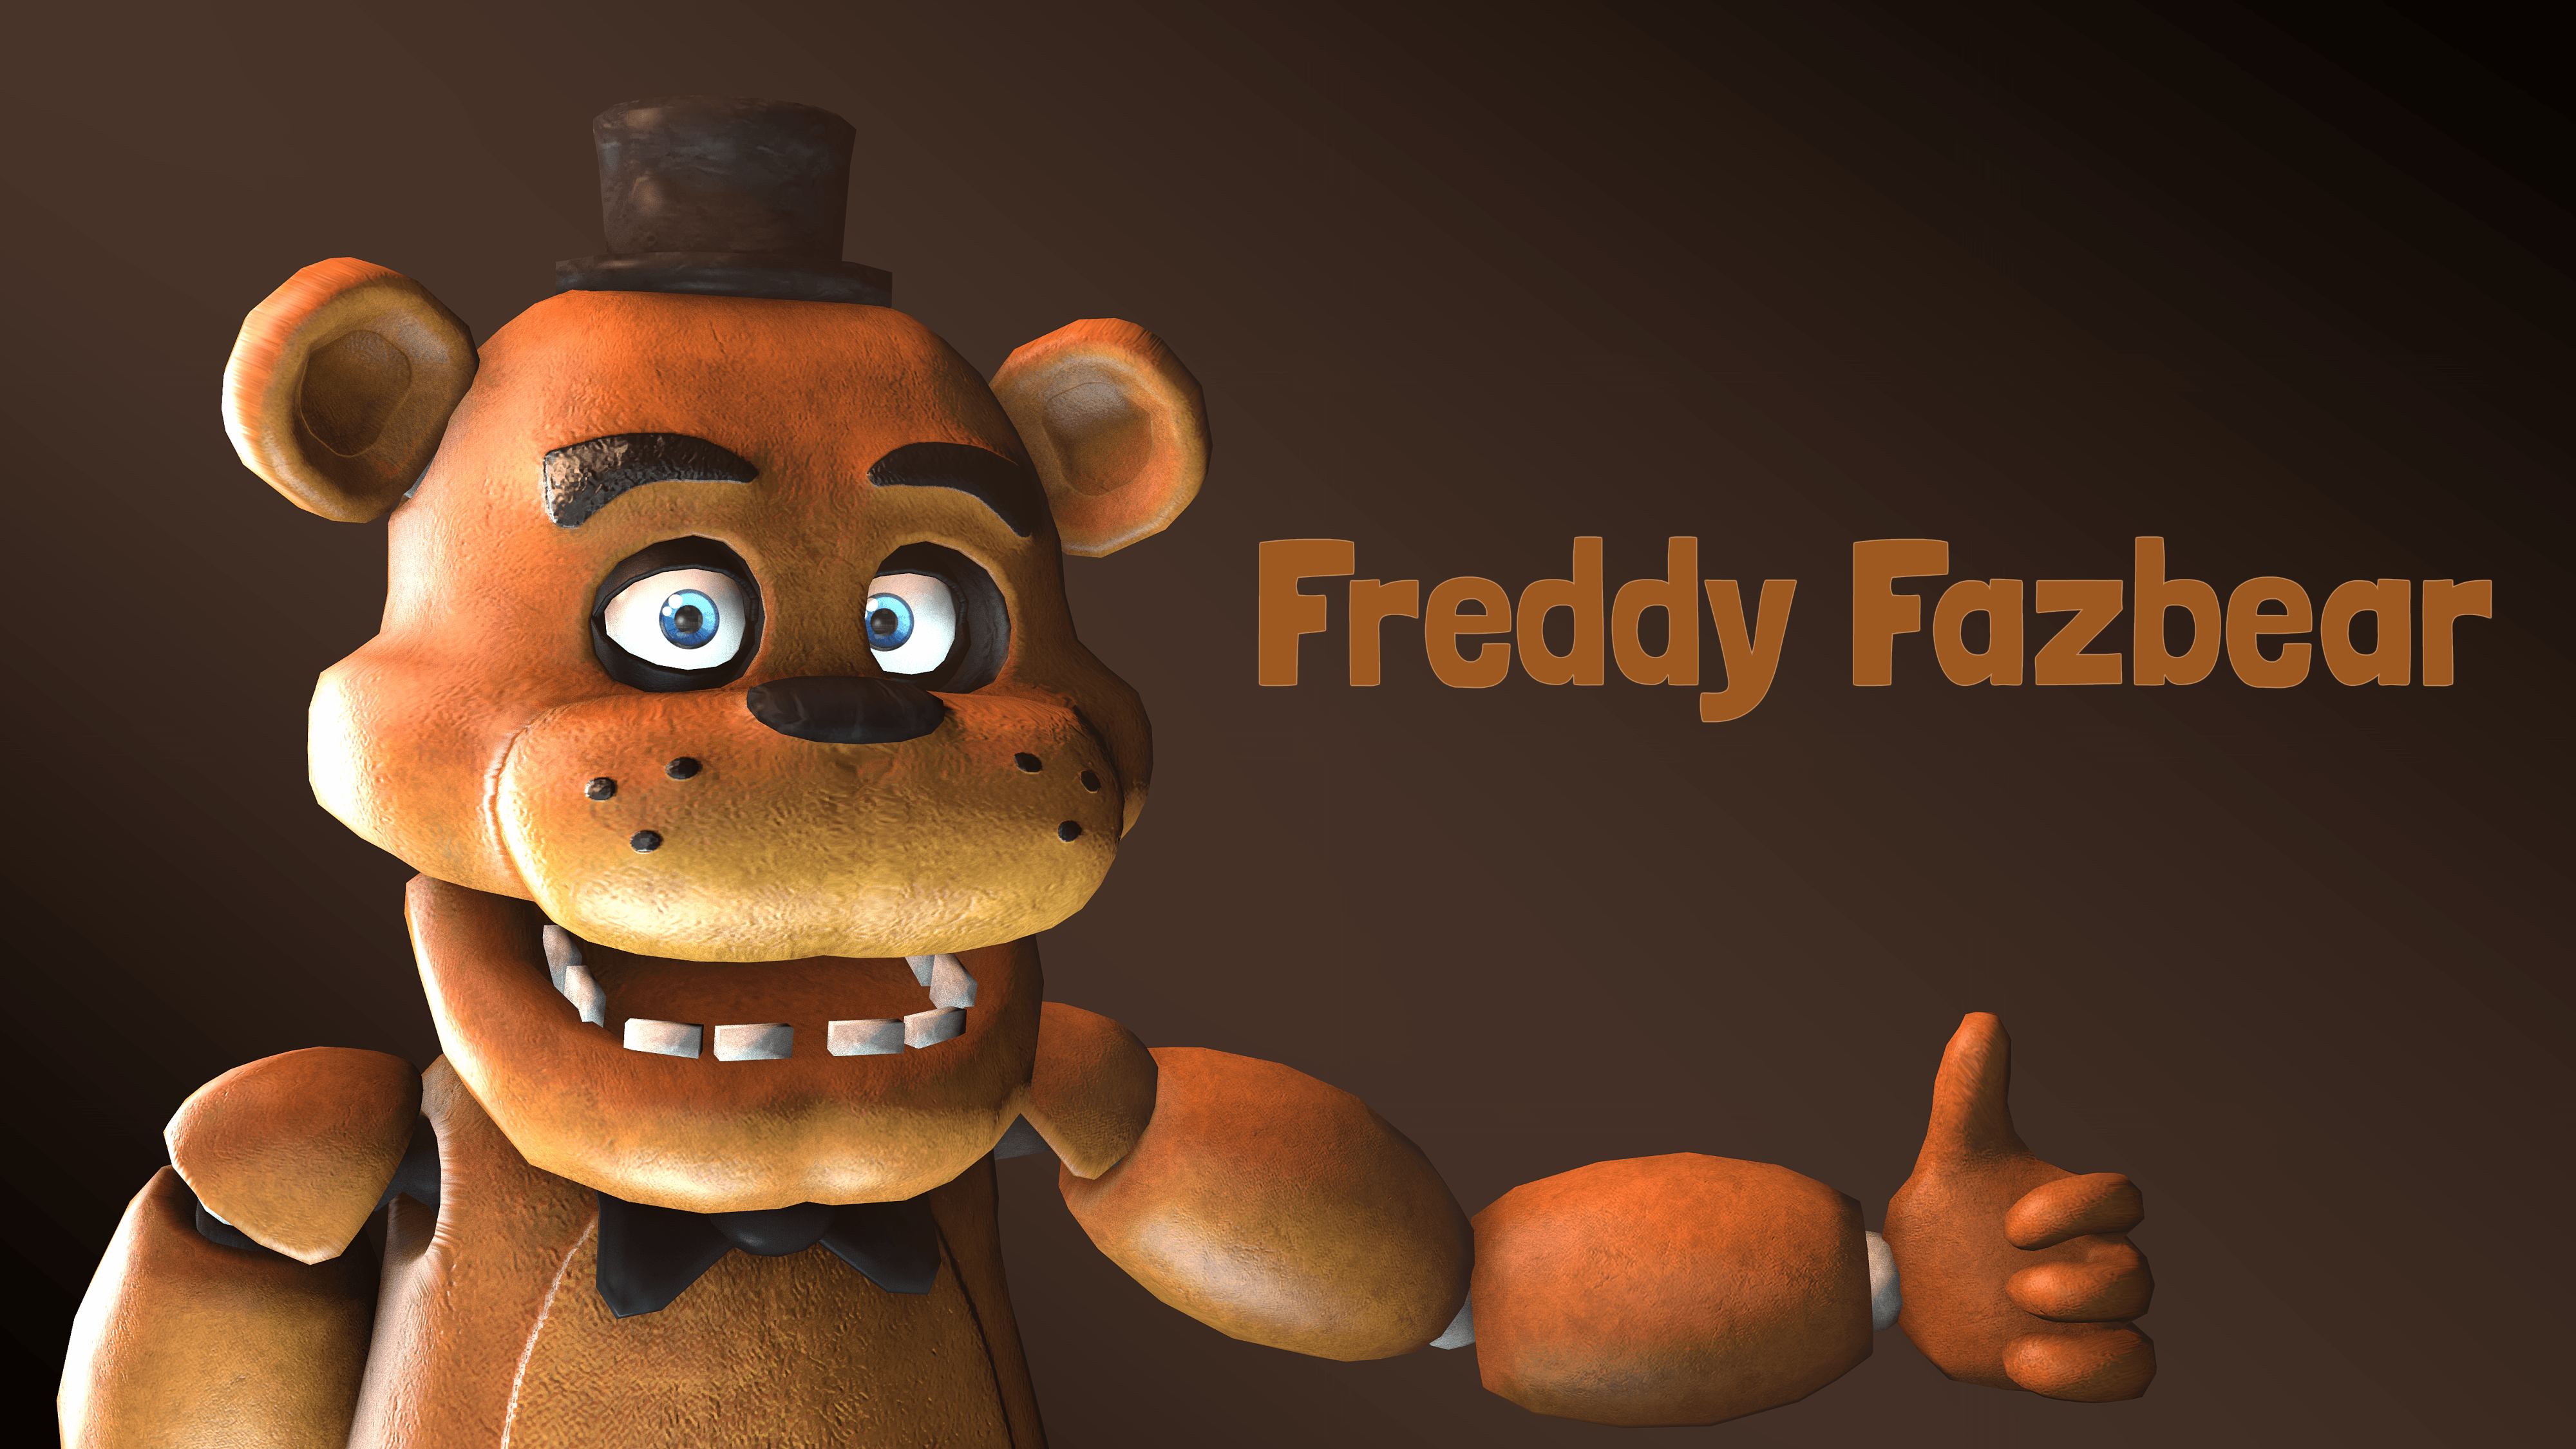 Freddy fazbear wallpapers.